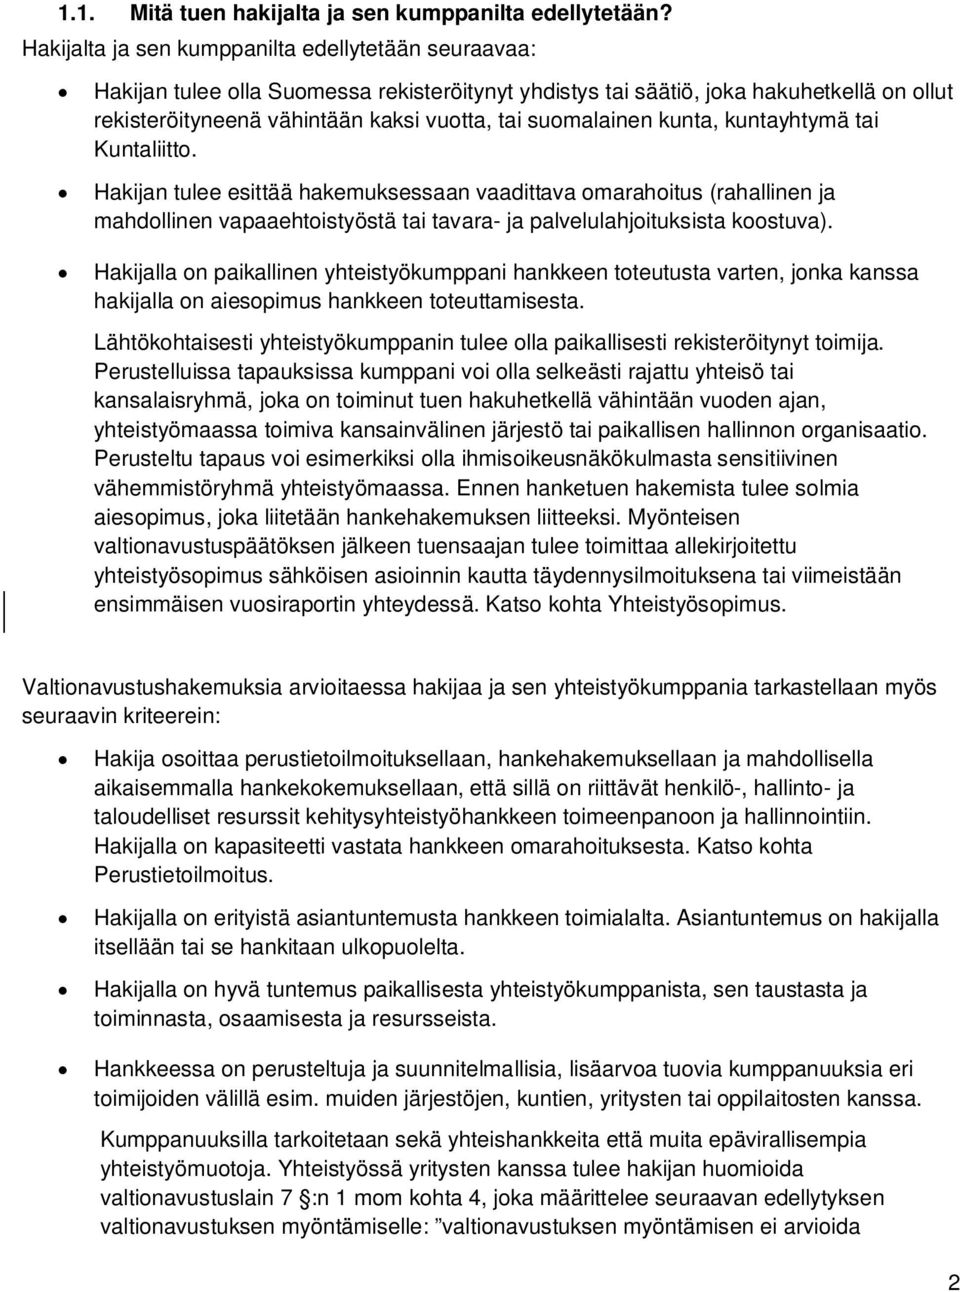 suomalainen kunta, kuntayhtymä tai Kuntaliitto. Hakijan tulee esittää hakemuksessaan vaadittava omarahoitus (rahallinen ja mahdollinen vapaaehtoistyöstä tai tavara- ja palvelulahjoituksista koostuva).